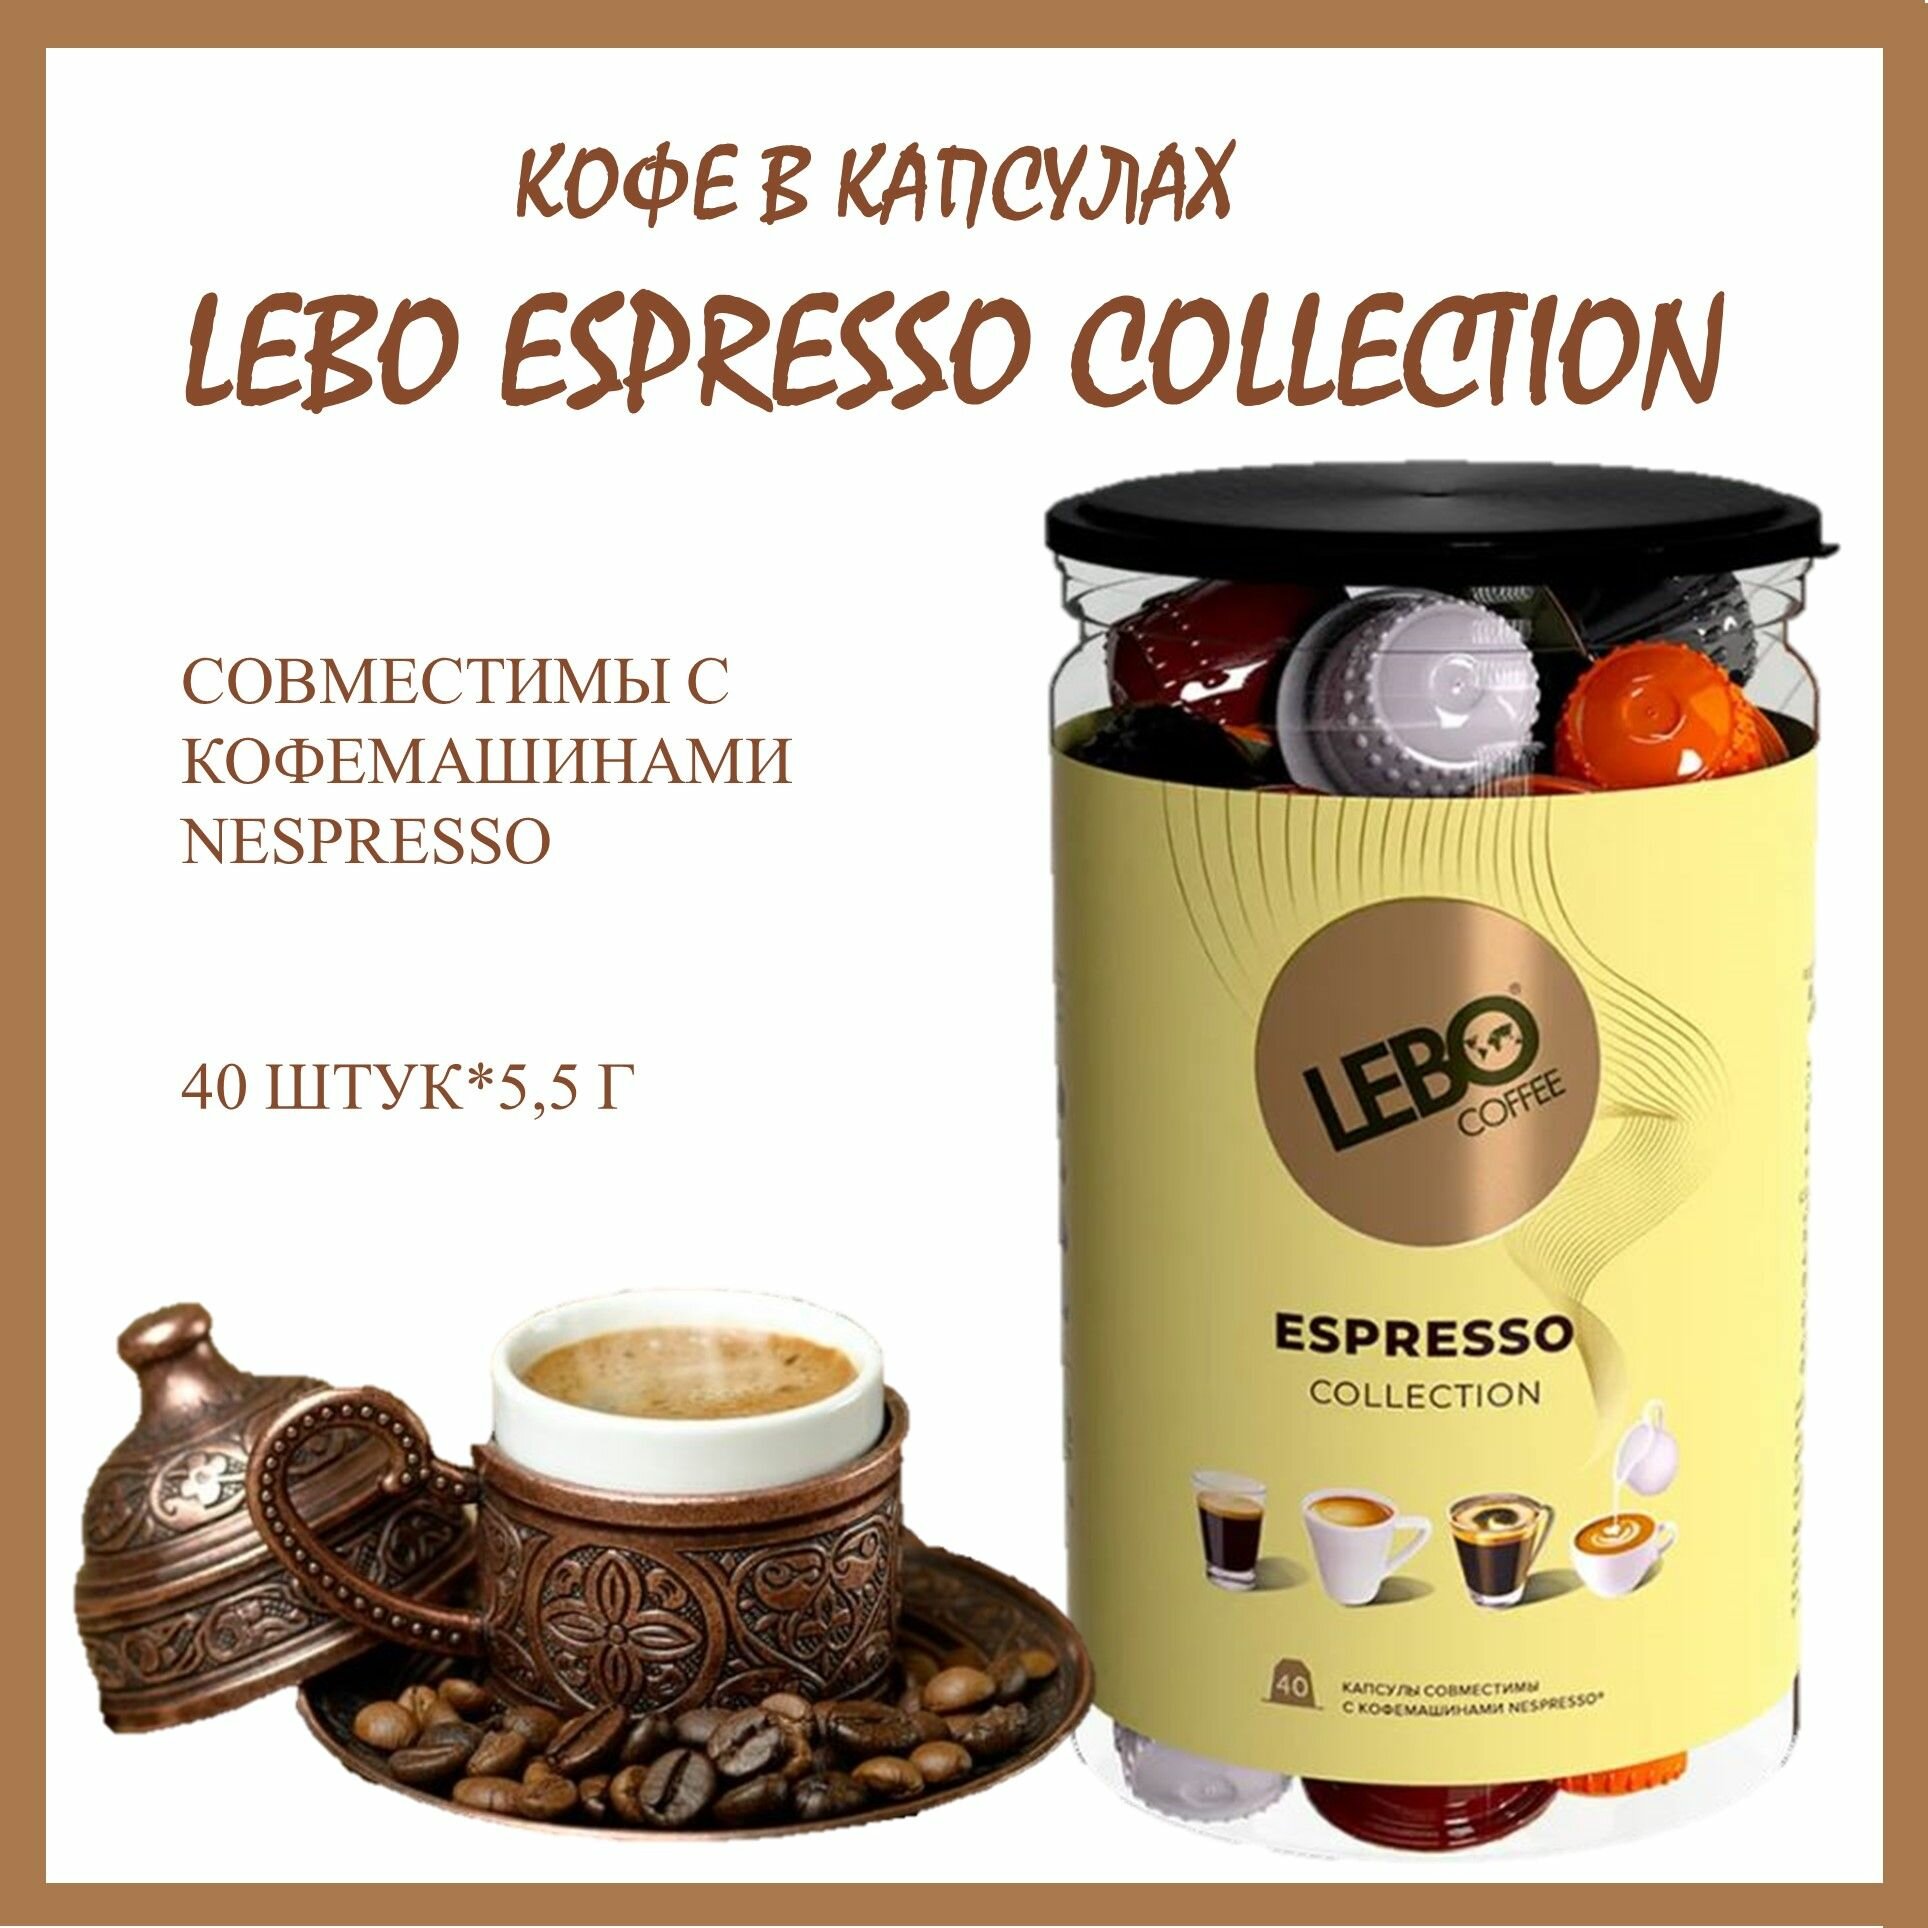 Кофе в капсулах Лебо Эспрессо Коллекшн (Lebo Espresso Collection) для кофемашин Nespresso 40 капсул * 5,5 г/ Россия - фотография № 1